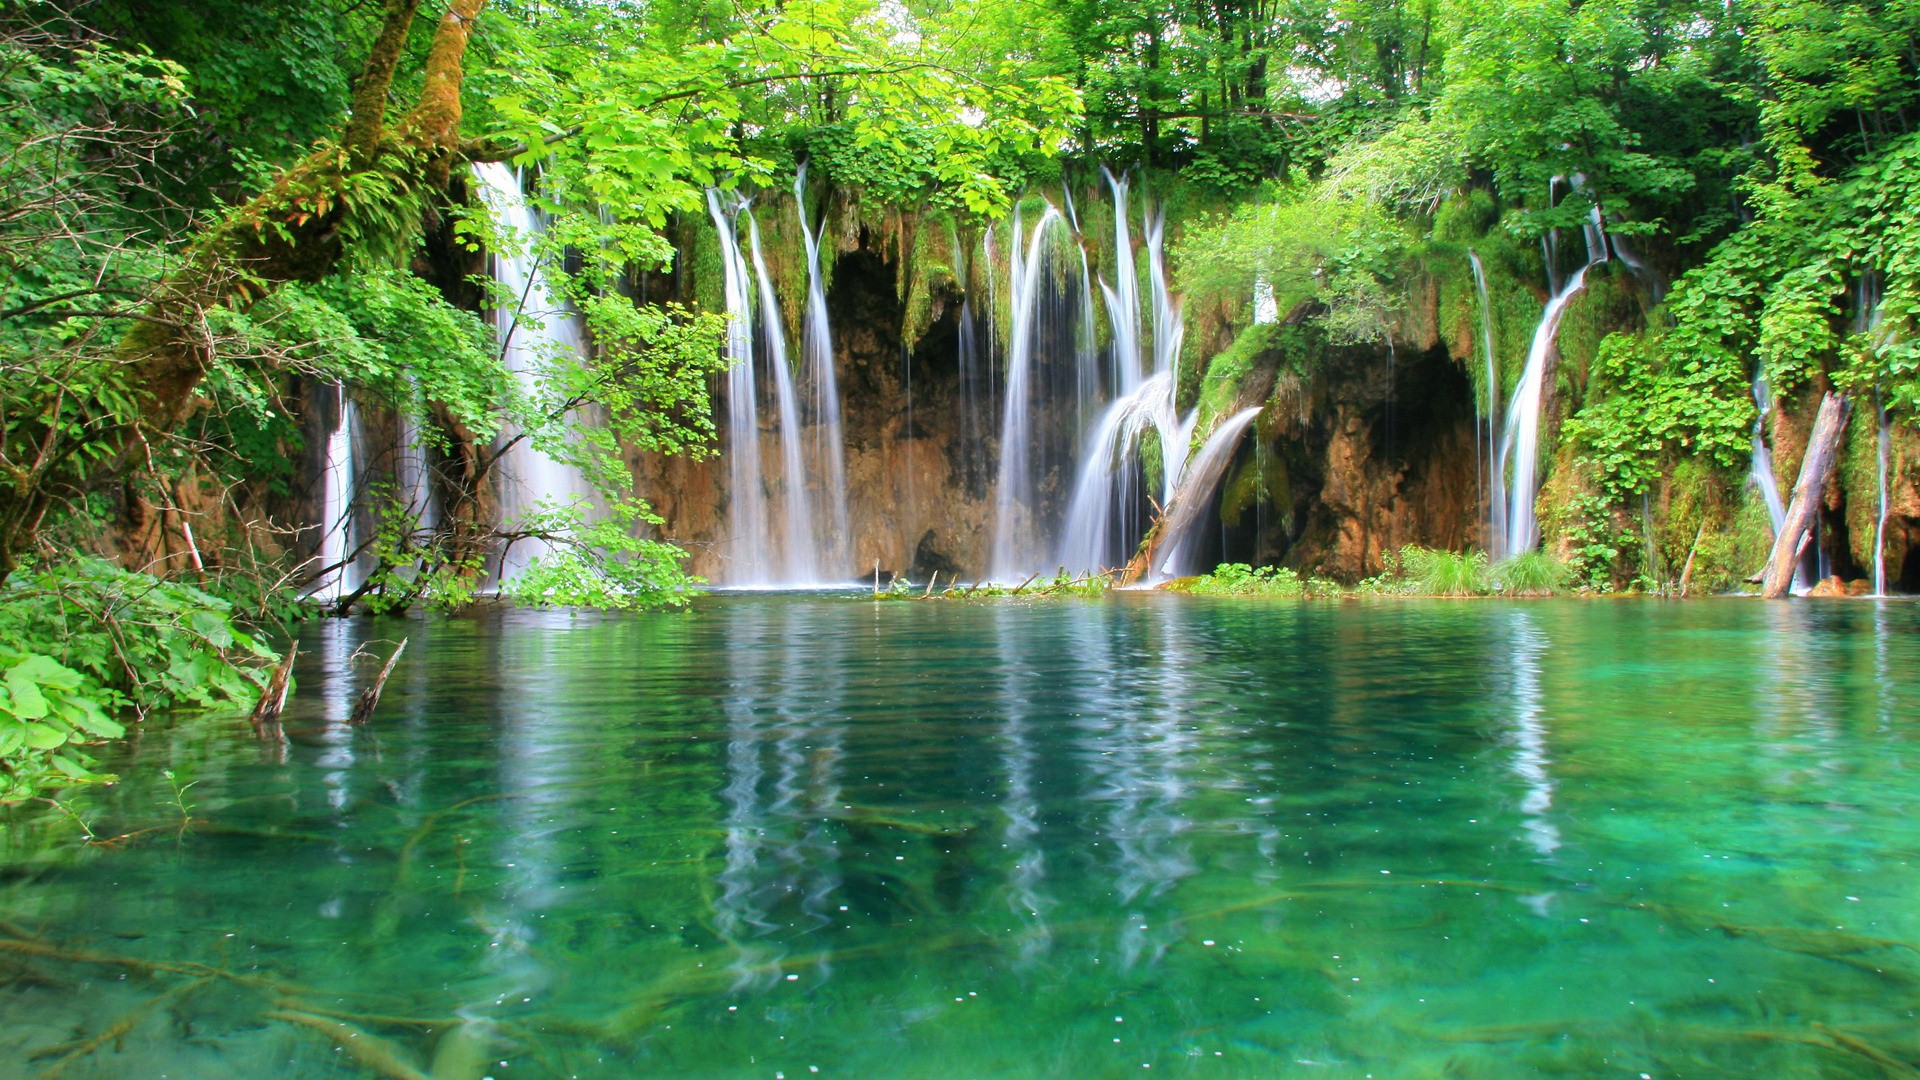 amazing hd waterfall image